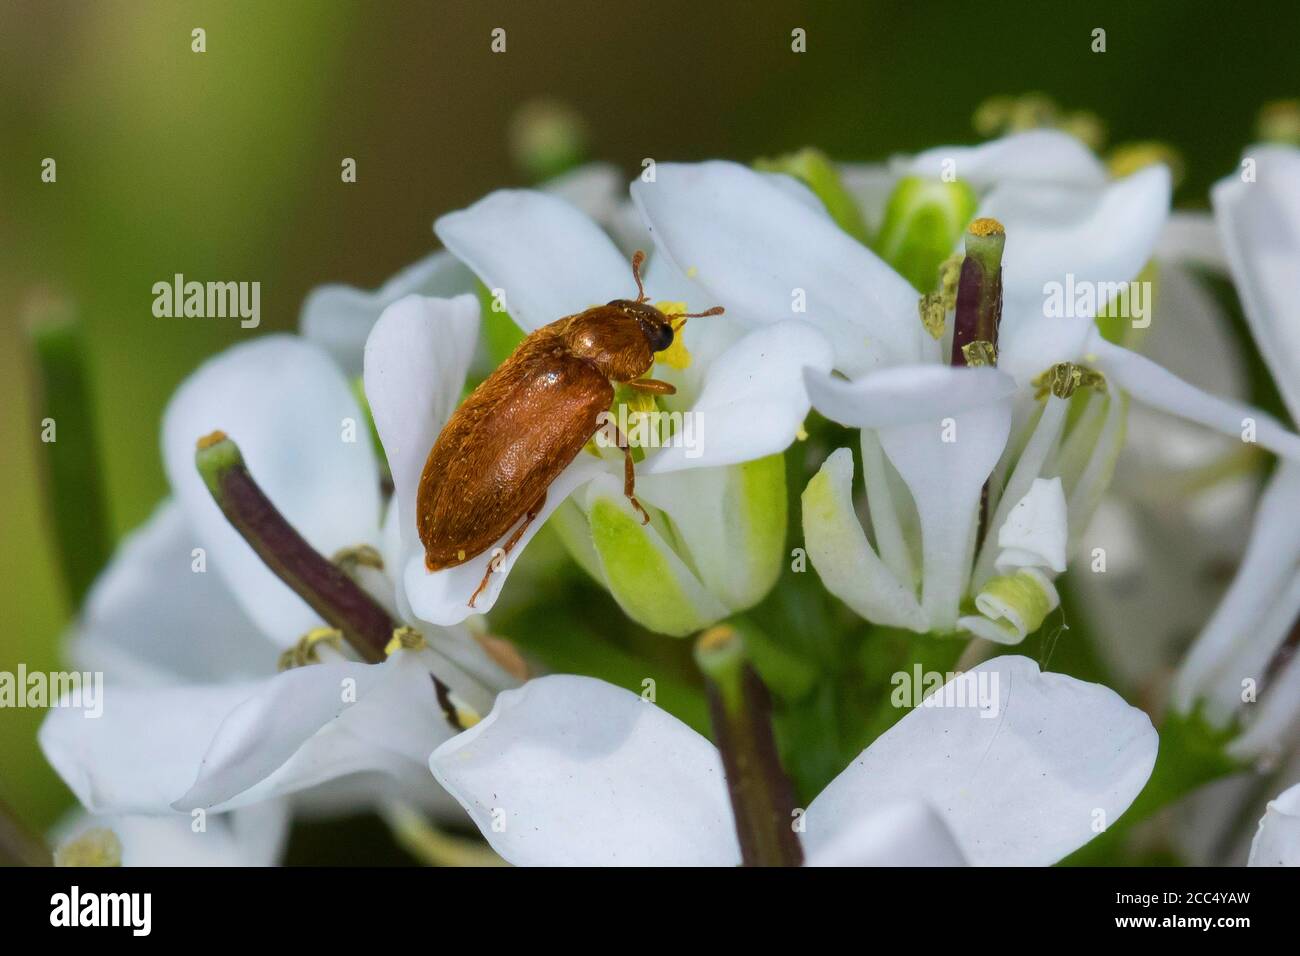 fruitworm beetles (Byturus ochraceus, Byturus fumatus, Byturus aestivus), on  garlic mustard, Alliaria petiolata, Germany Stock Photo